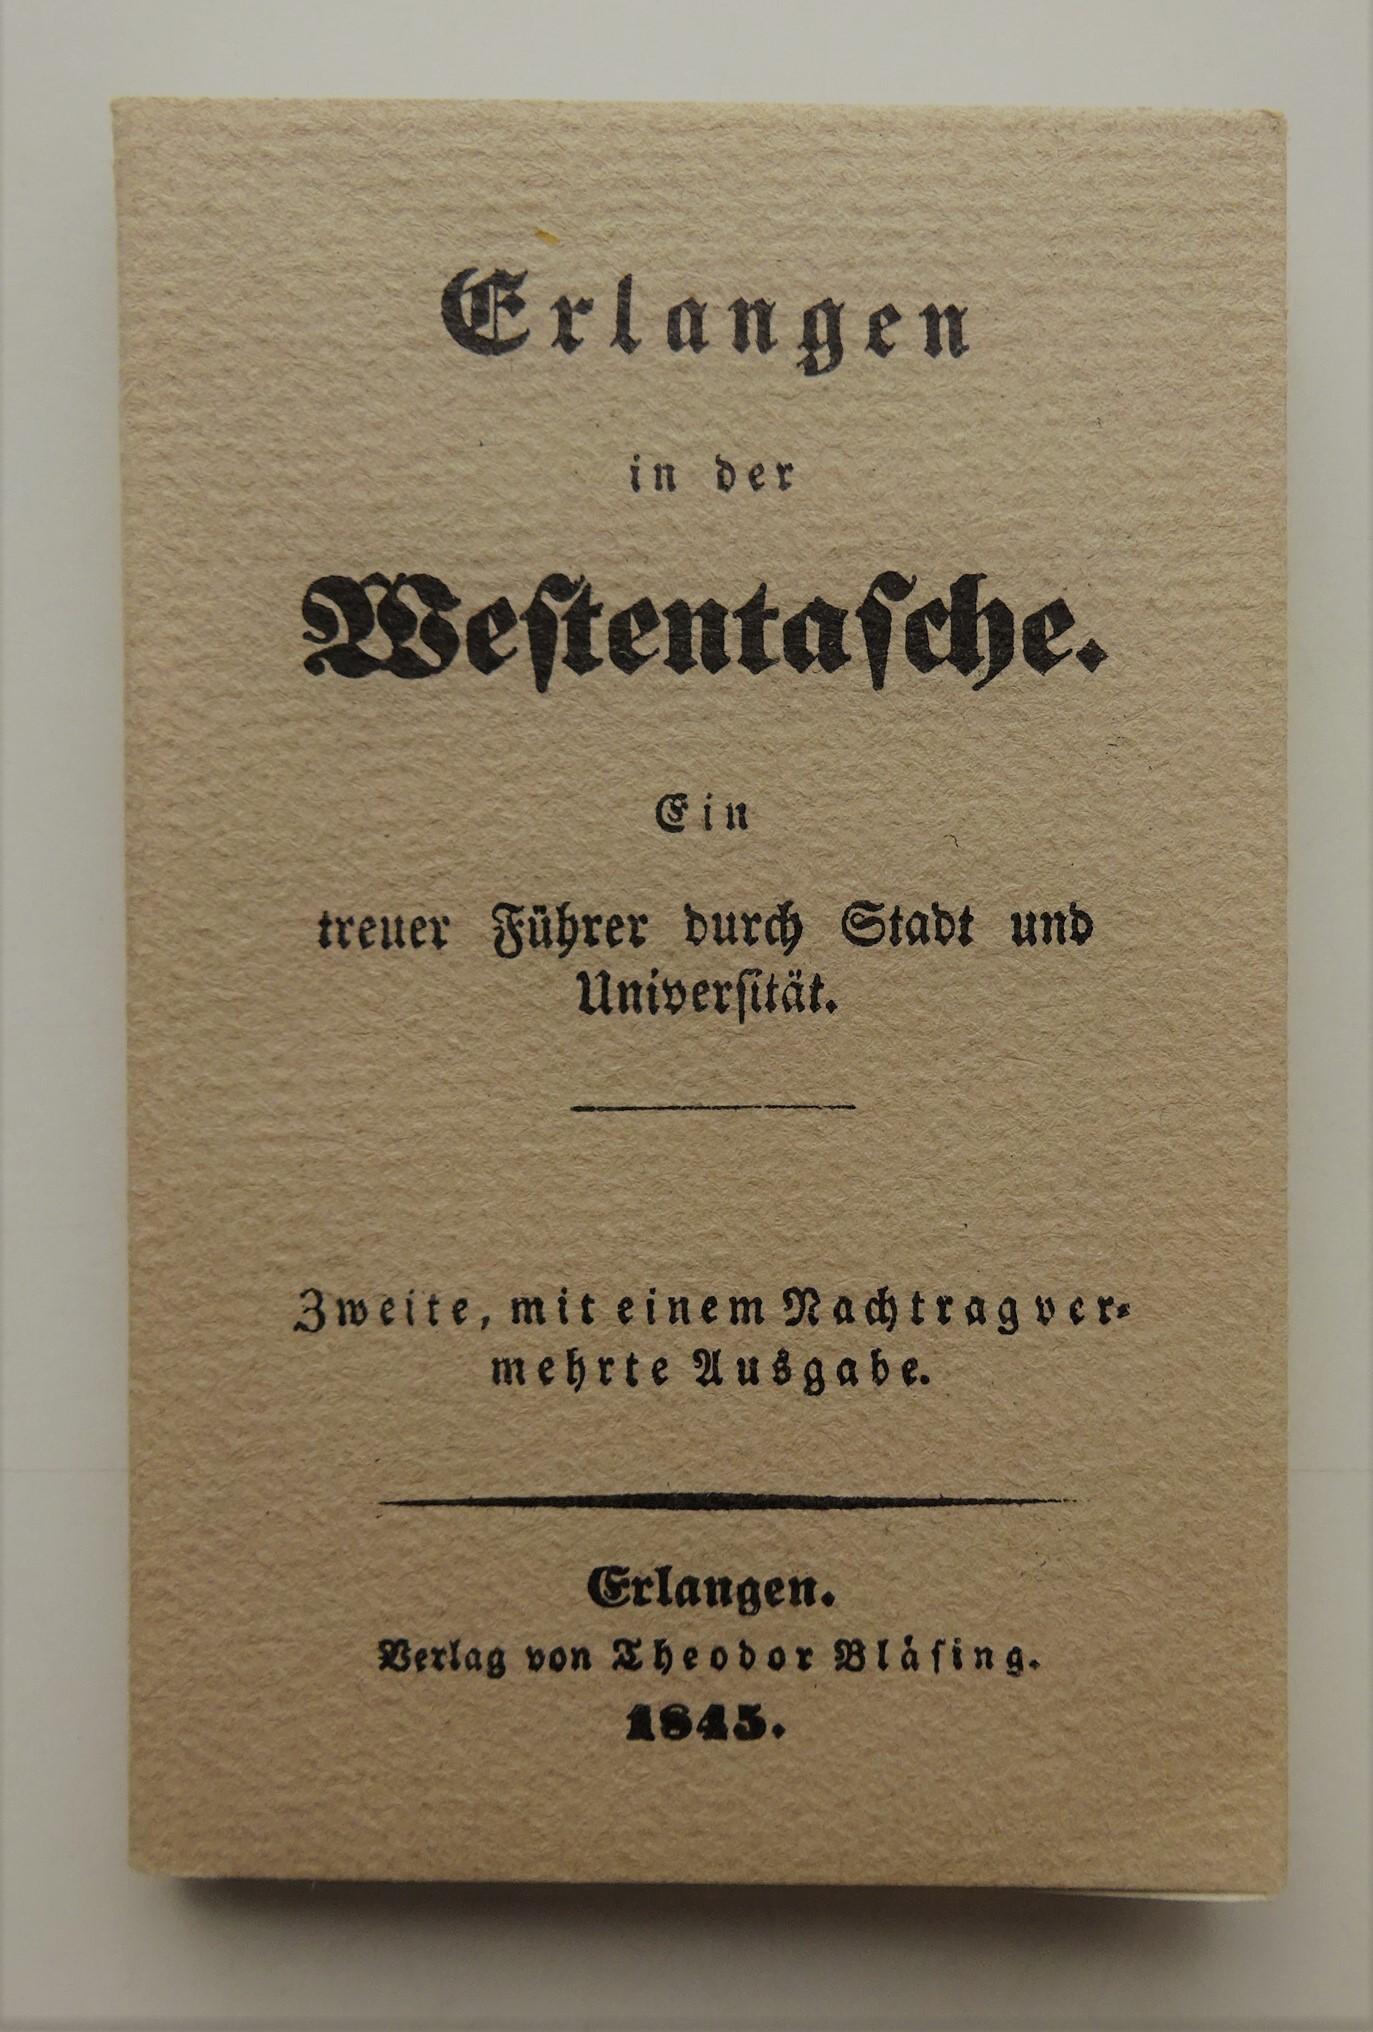 Erlangen in der Westentasche. Ein treuer Führer durch Stadt und Universität. Nachdruck der zweiten Auflage aus dem Jahre 1845. - None